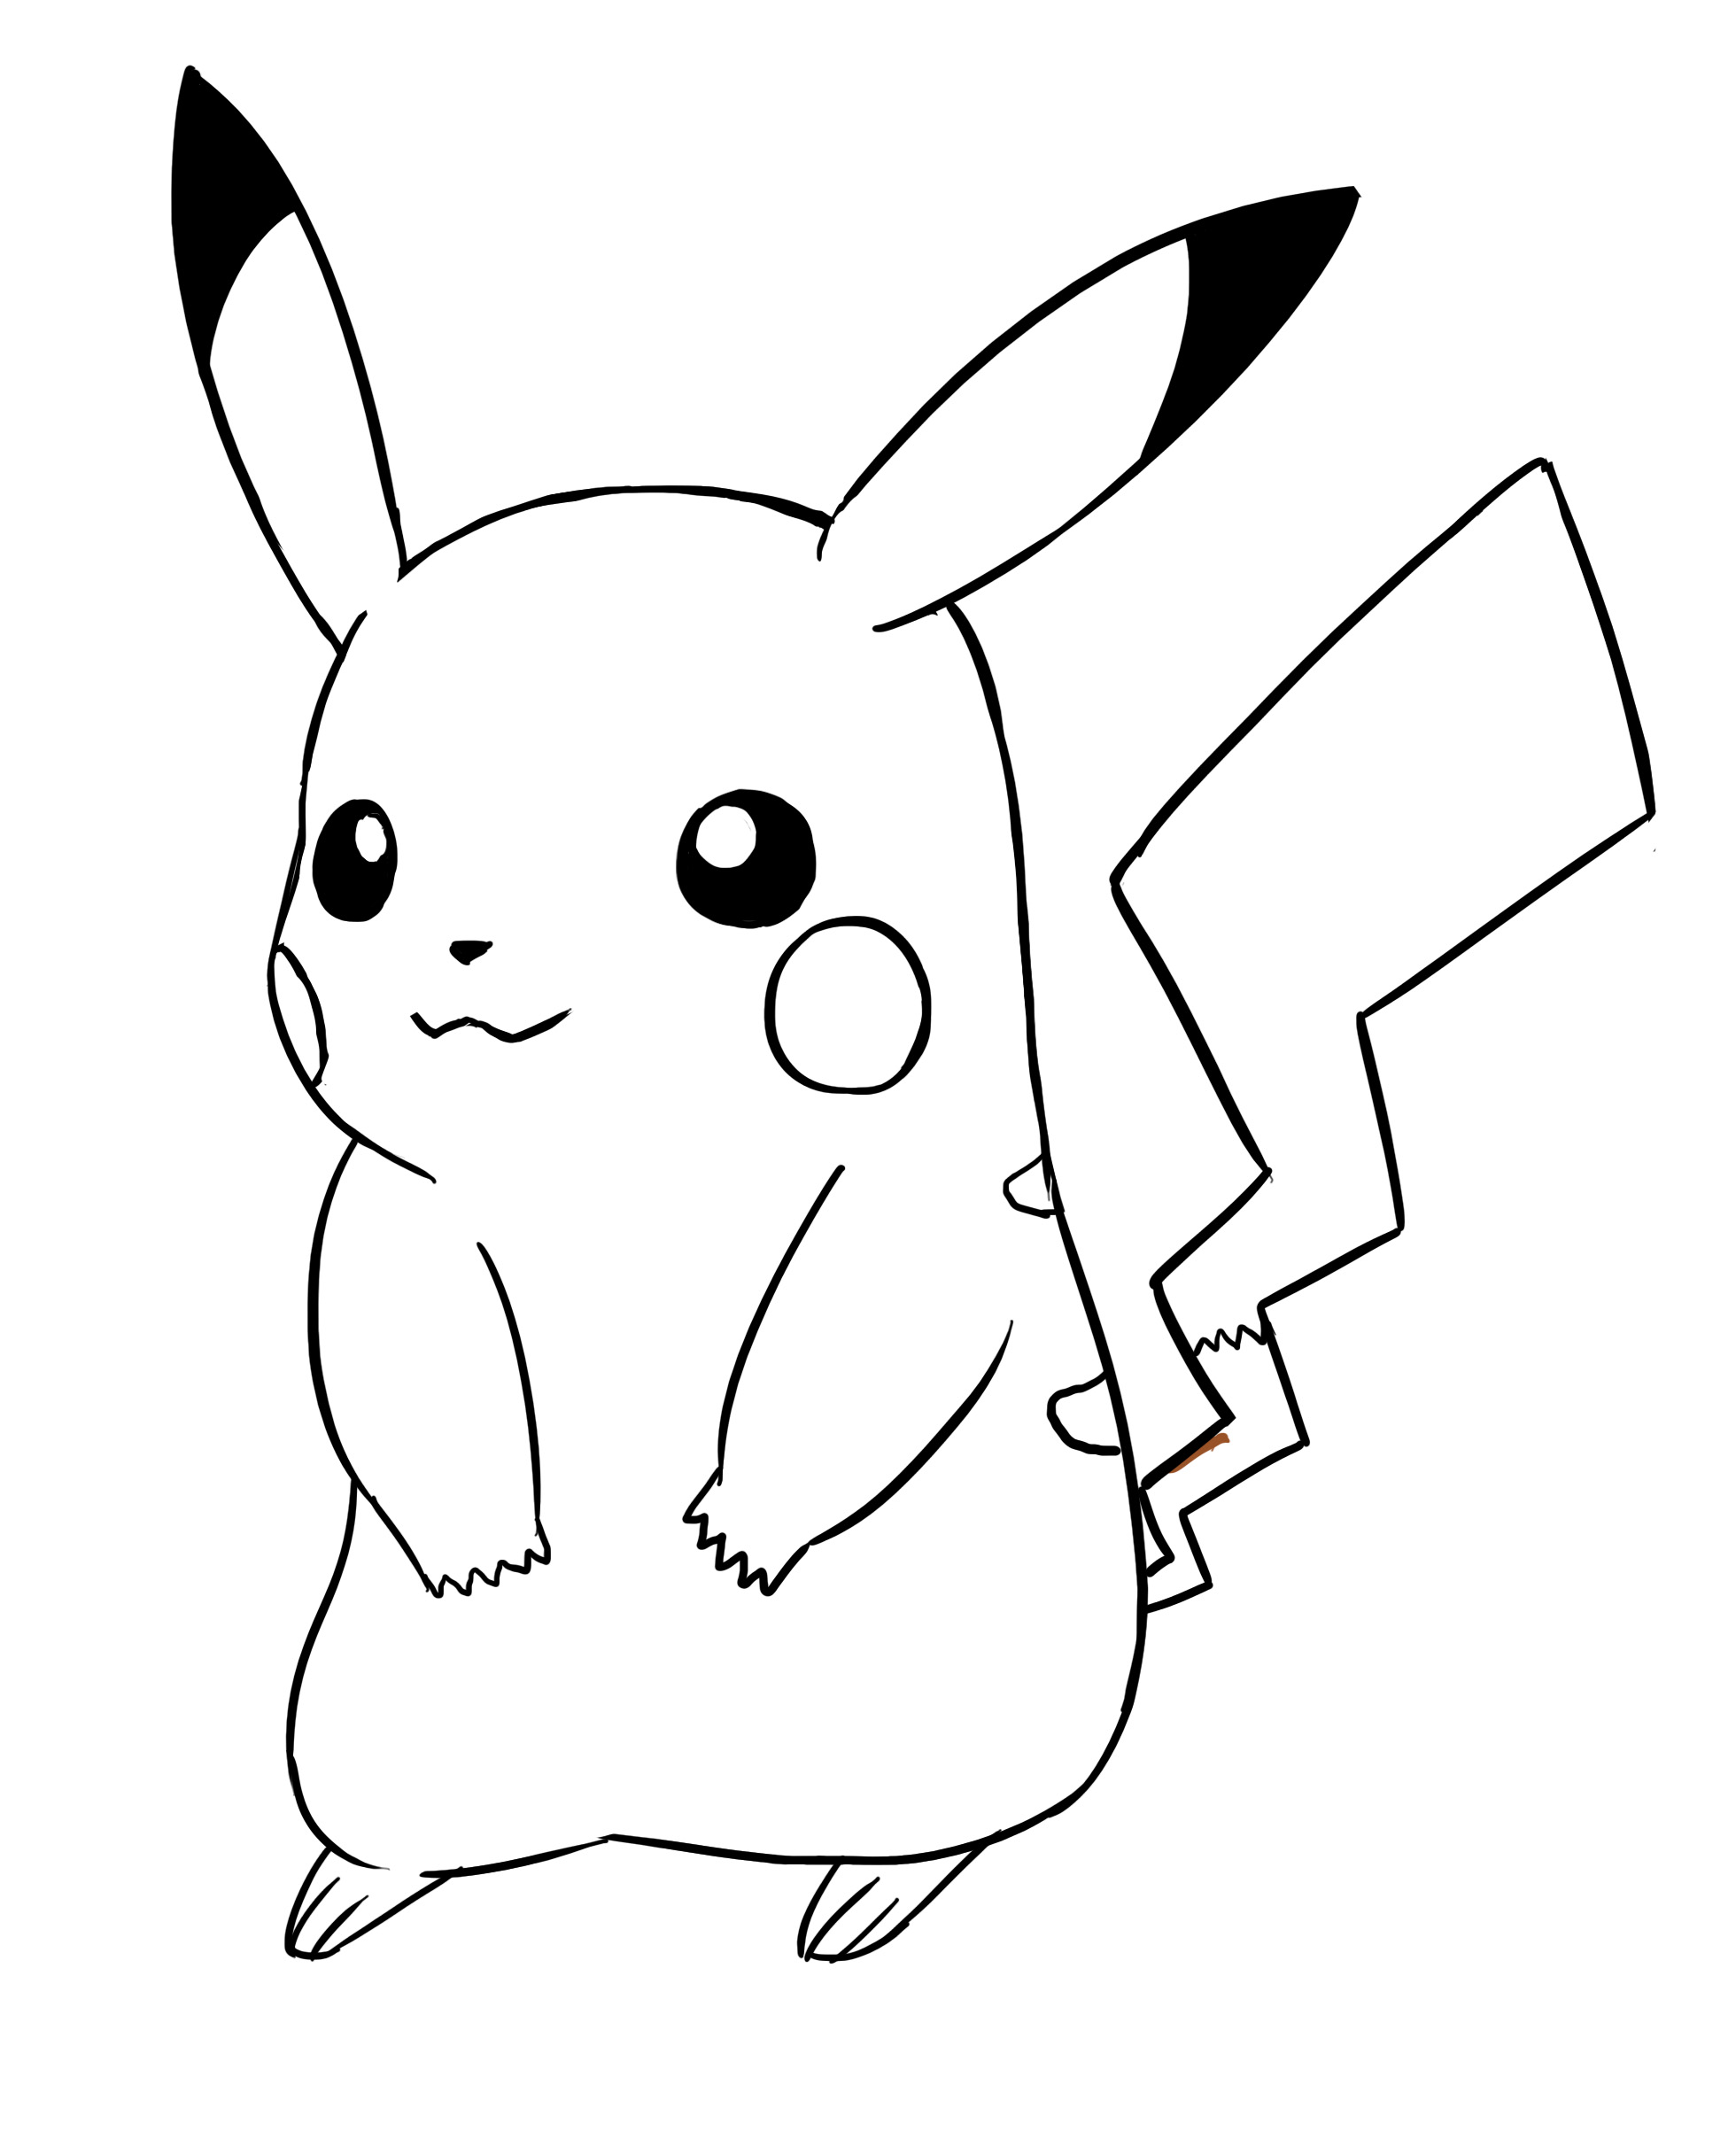 Appliquer la couleur noir aux yeux et oreilles du dessin de Pikachu